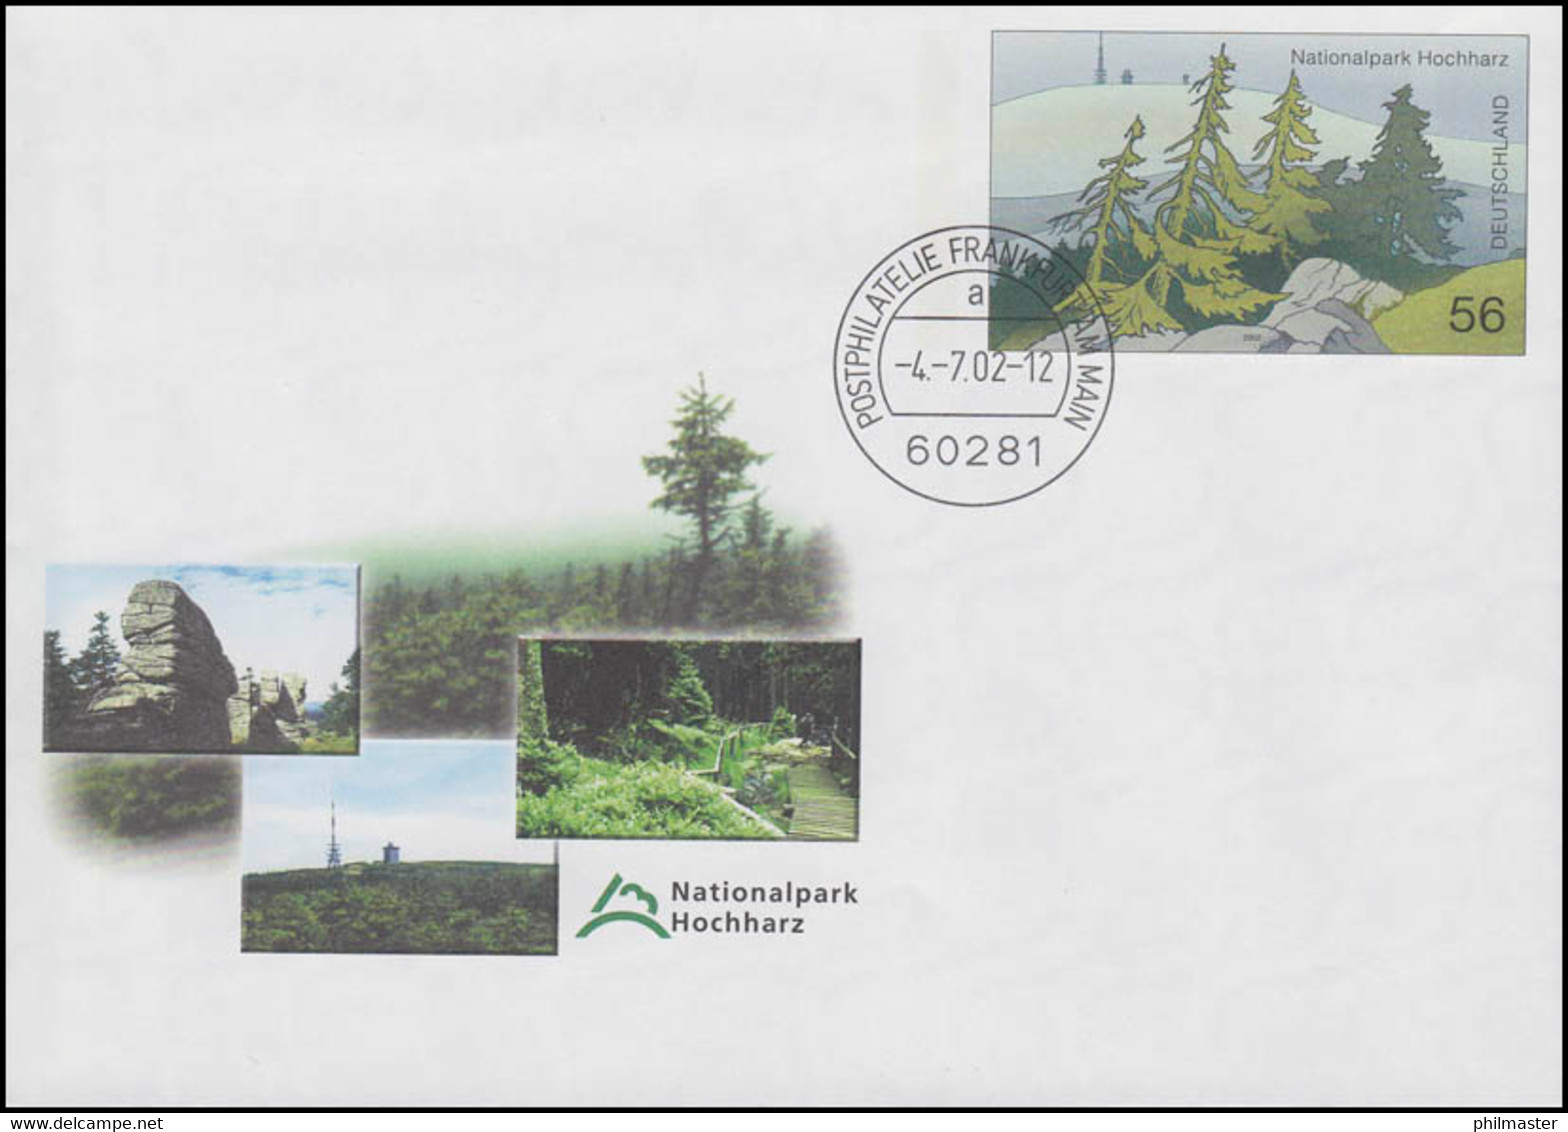 USo 39 Nationalpark Hochharz 2002, VS-O Frankfurt 4.7.2002 - Enveloppes - Neuves